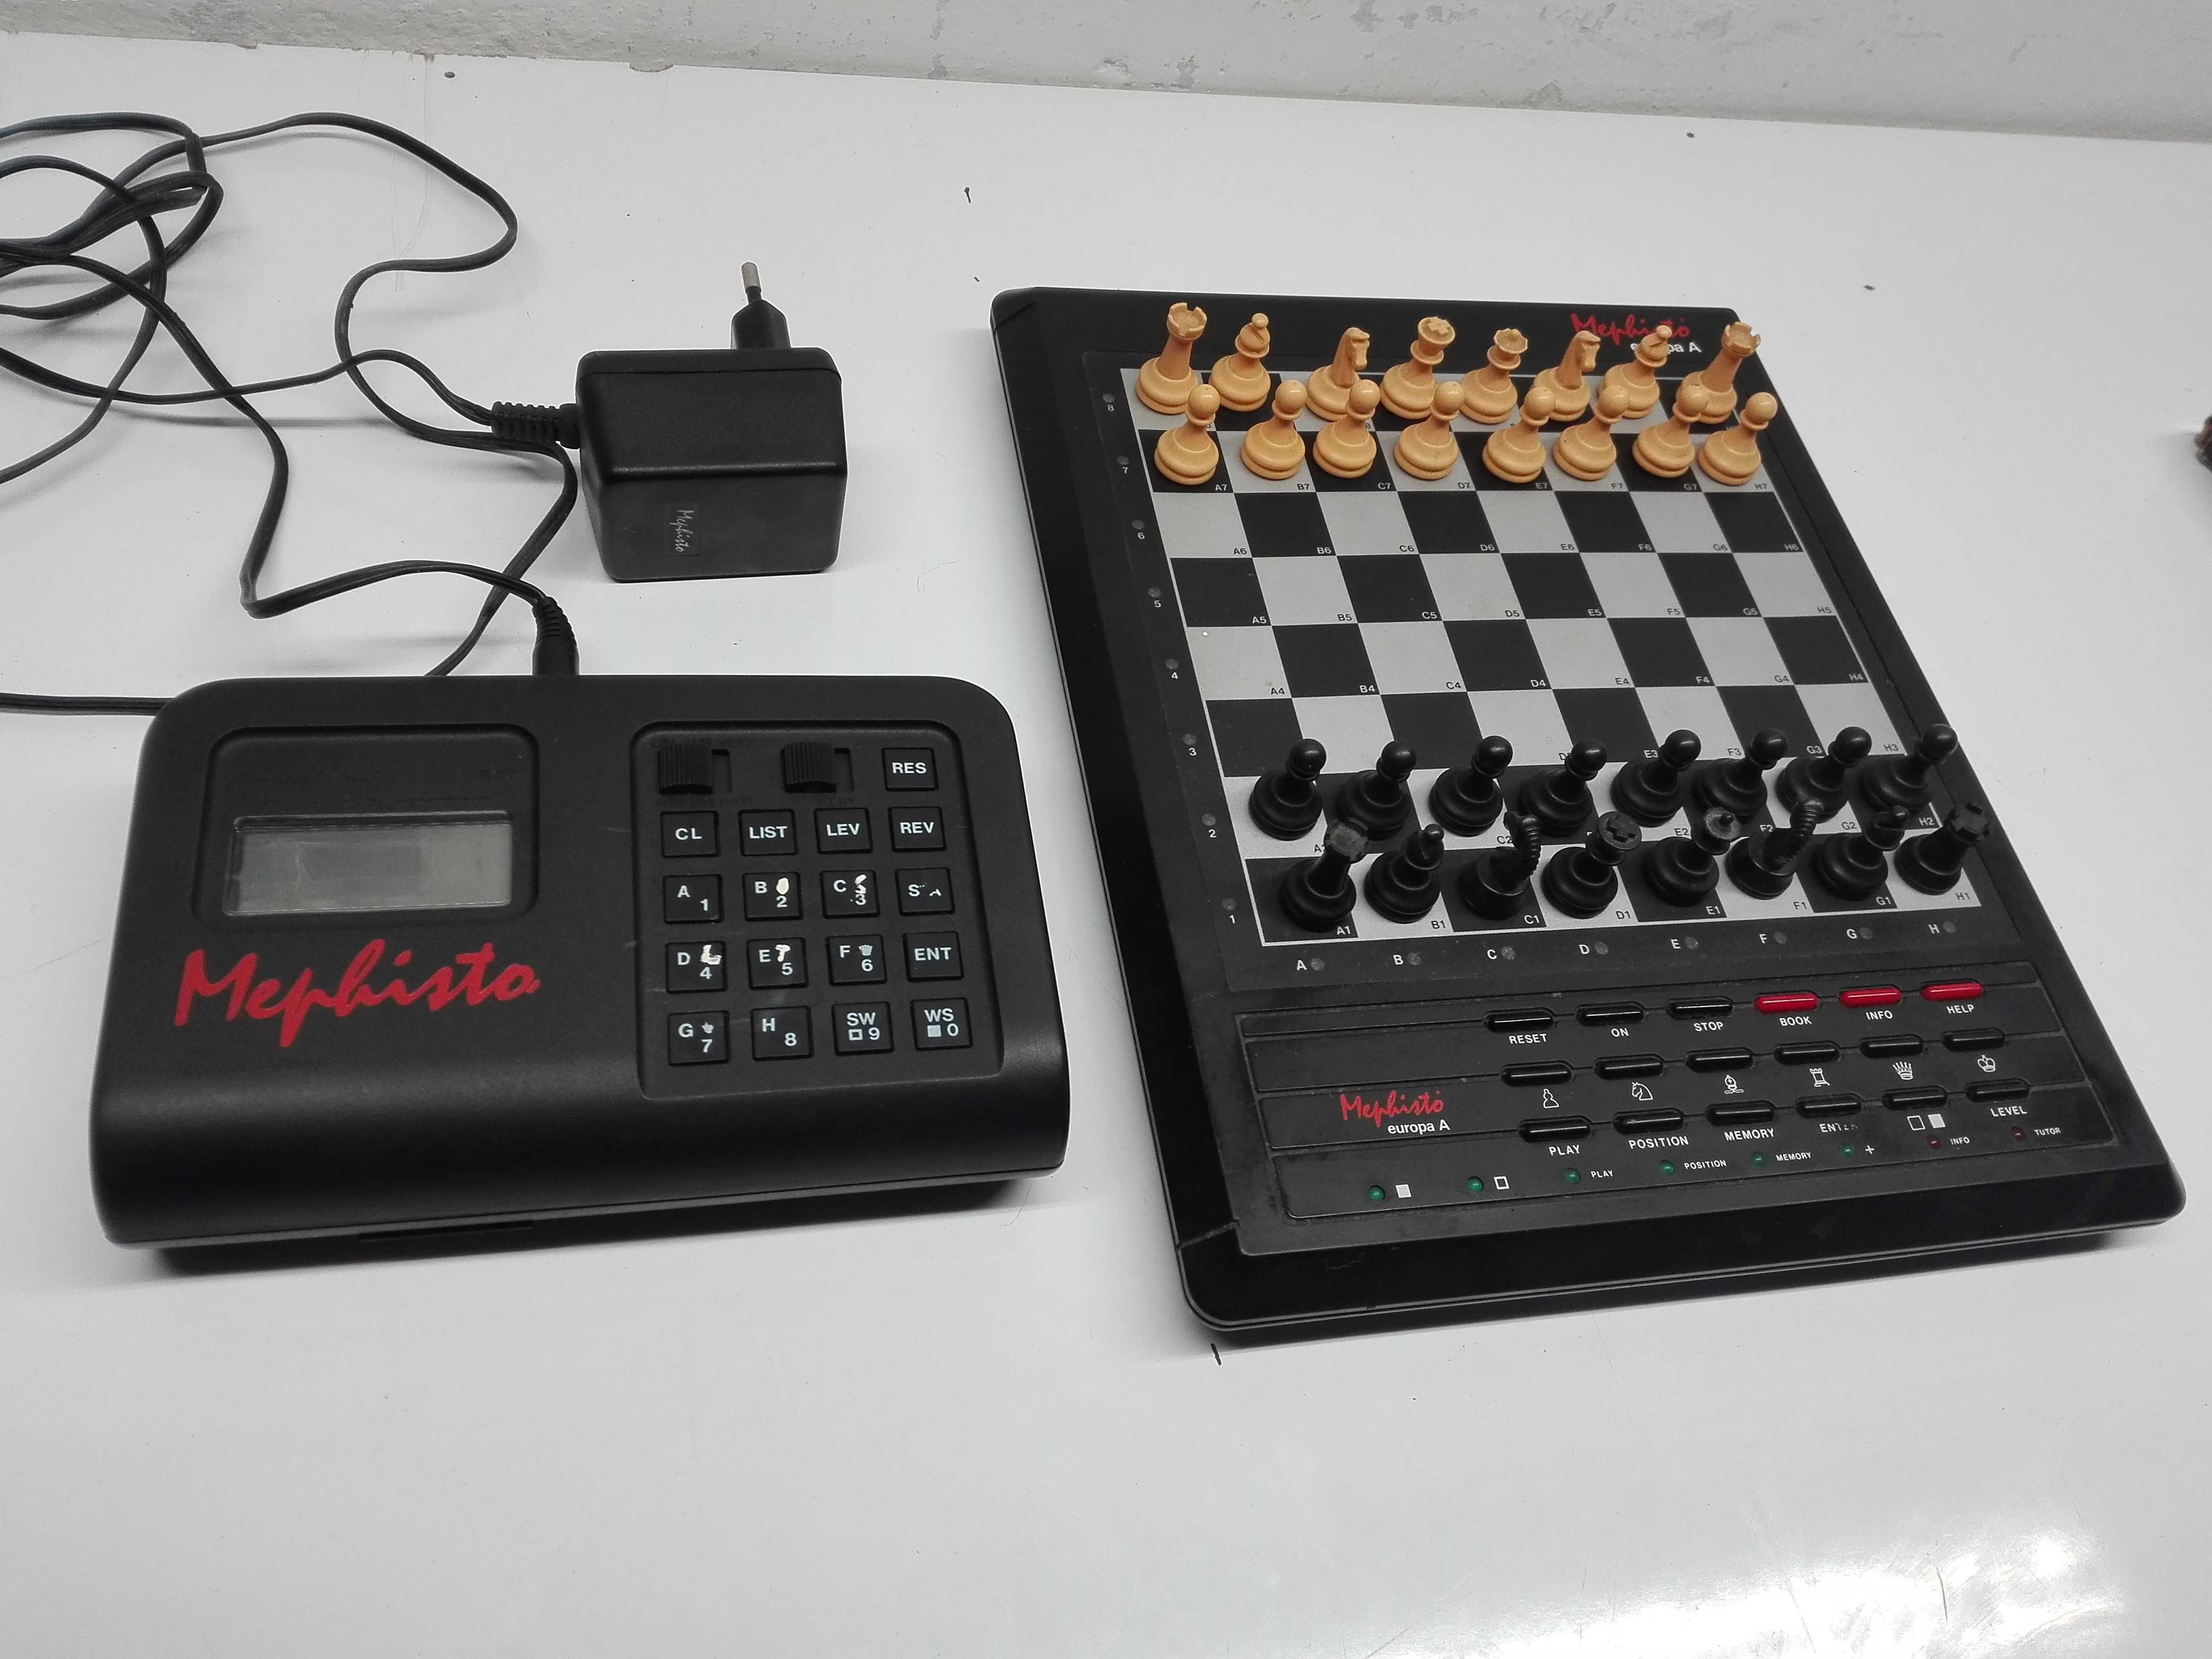 Mephisto komputer szachowy moduł dwa komplety okazja